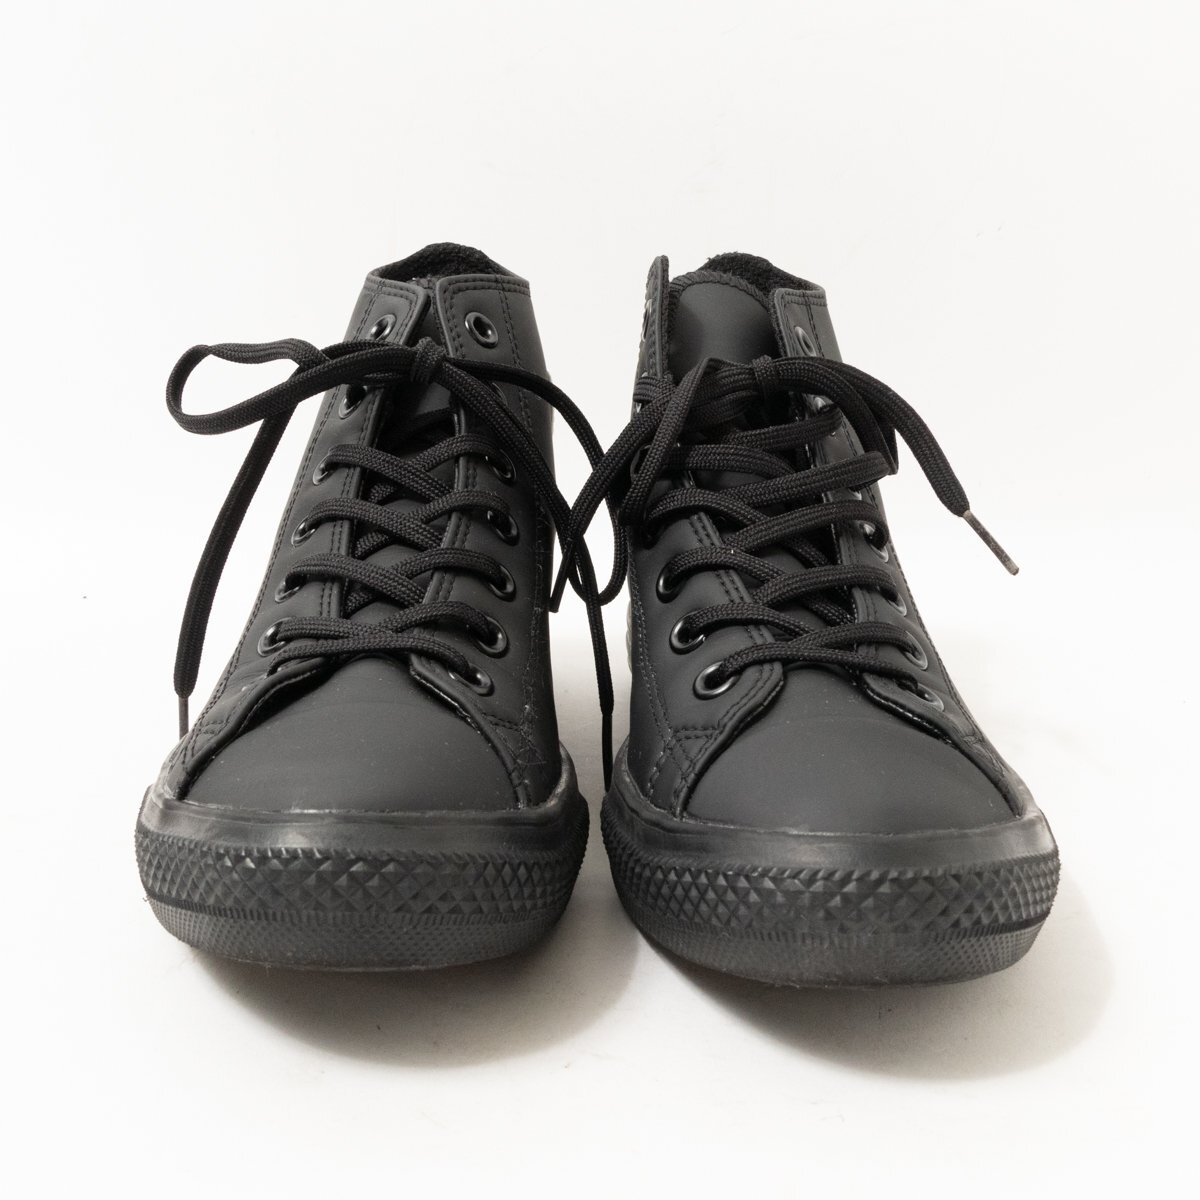 CONVERSE Converse ALL STAR все Star - ikatto резиновые сапоги спортивные туфли черный чёрный 24cm женский простой casual обувь 